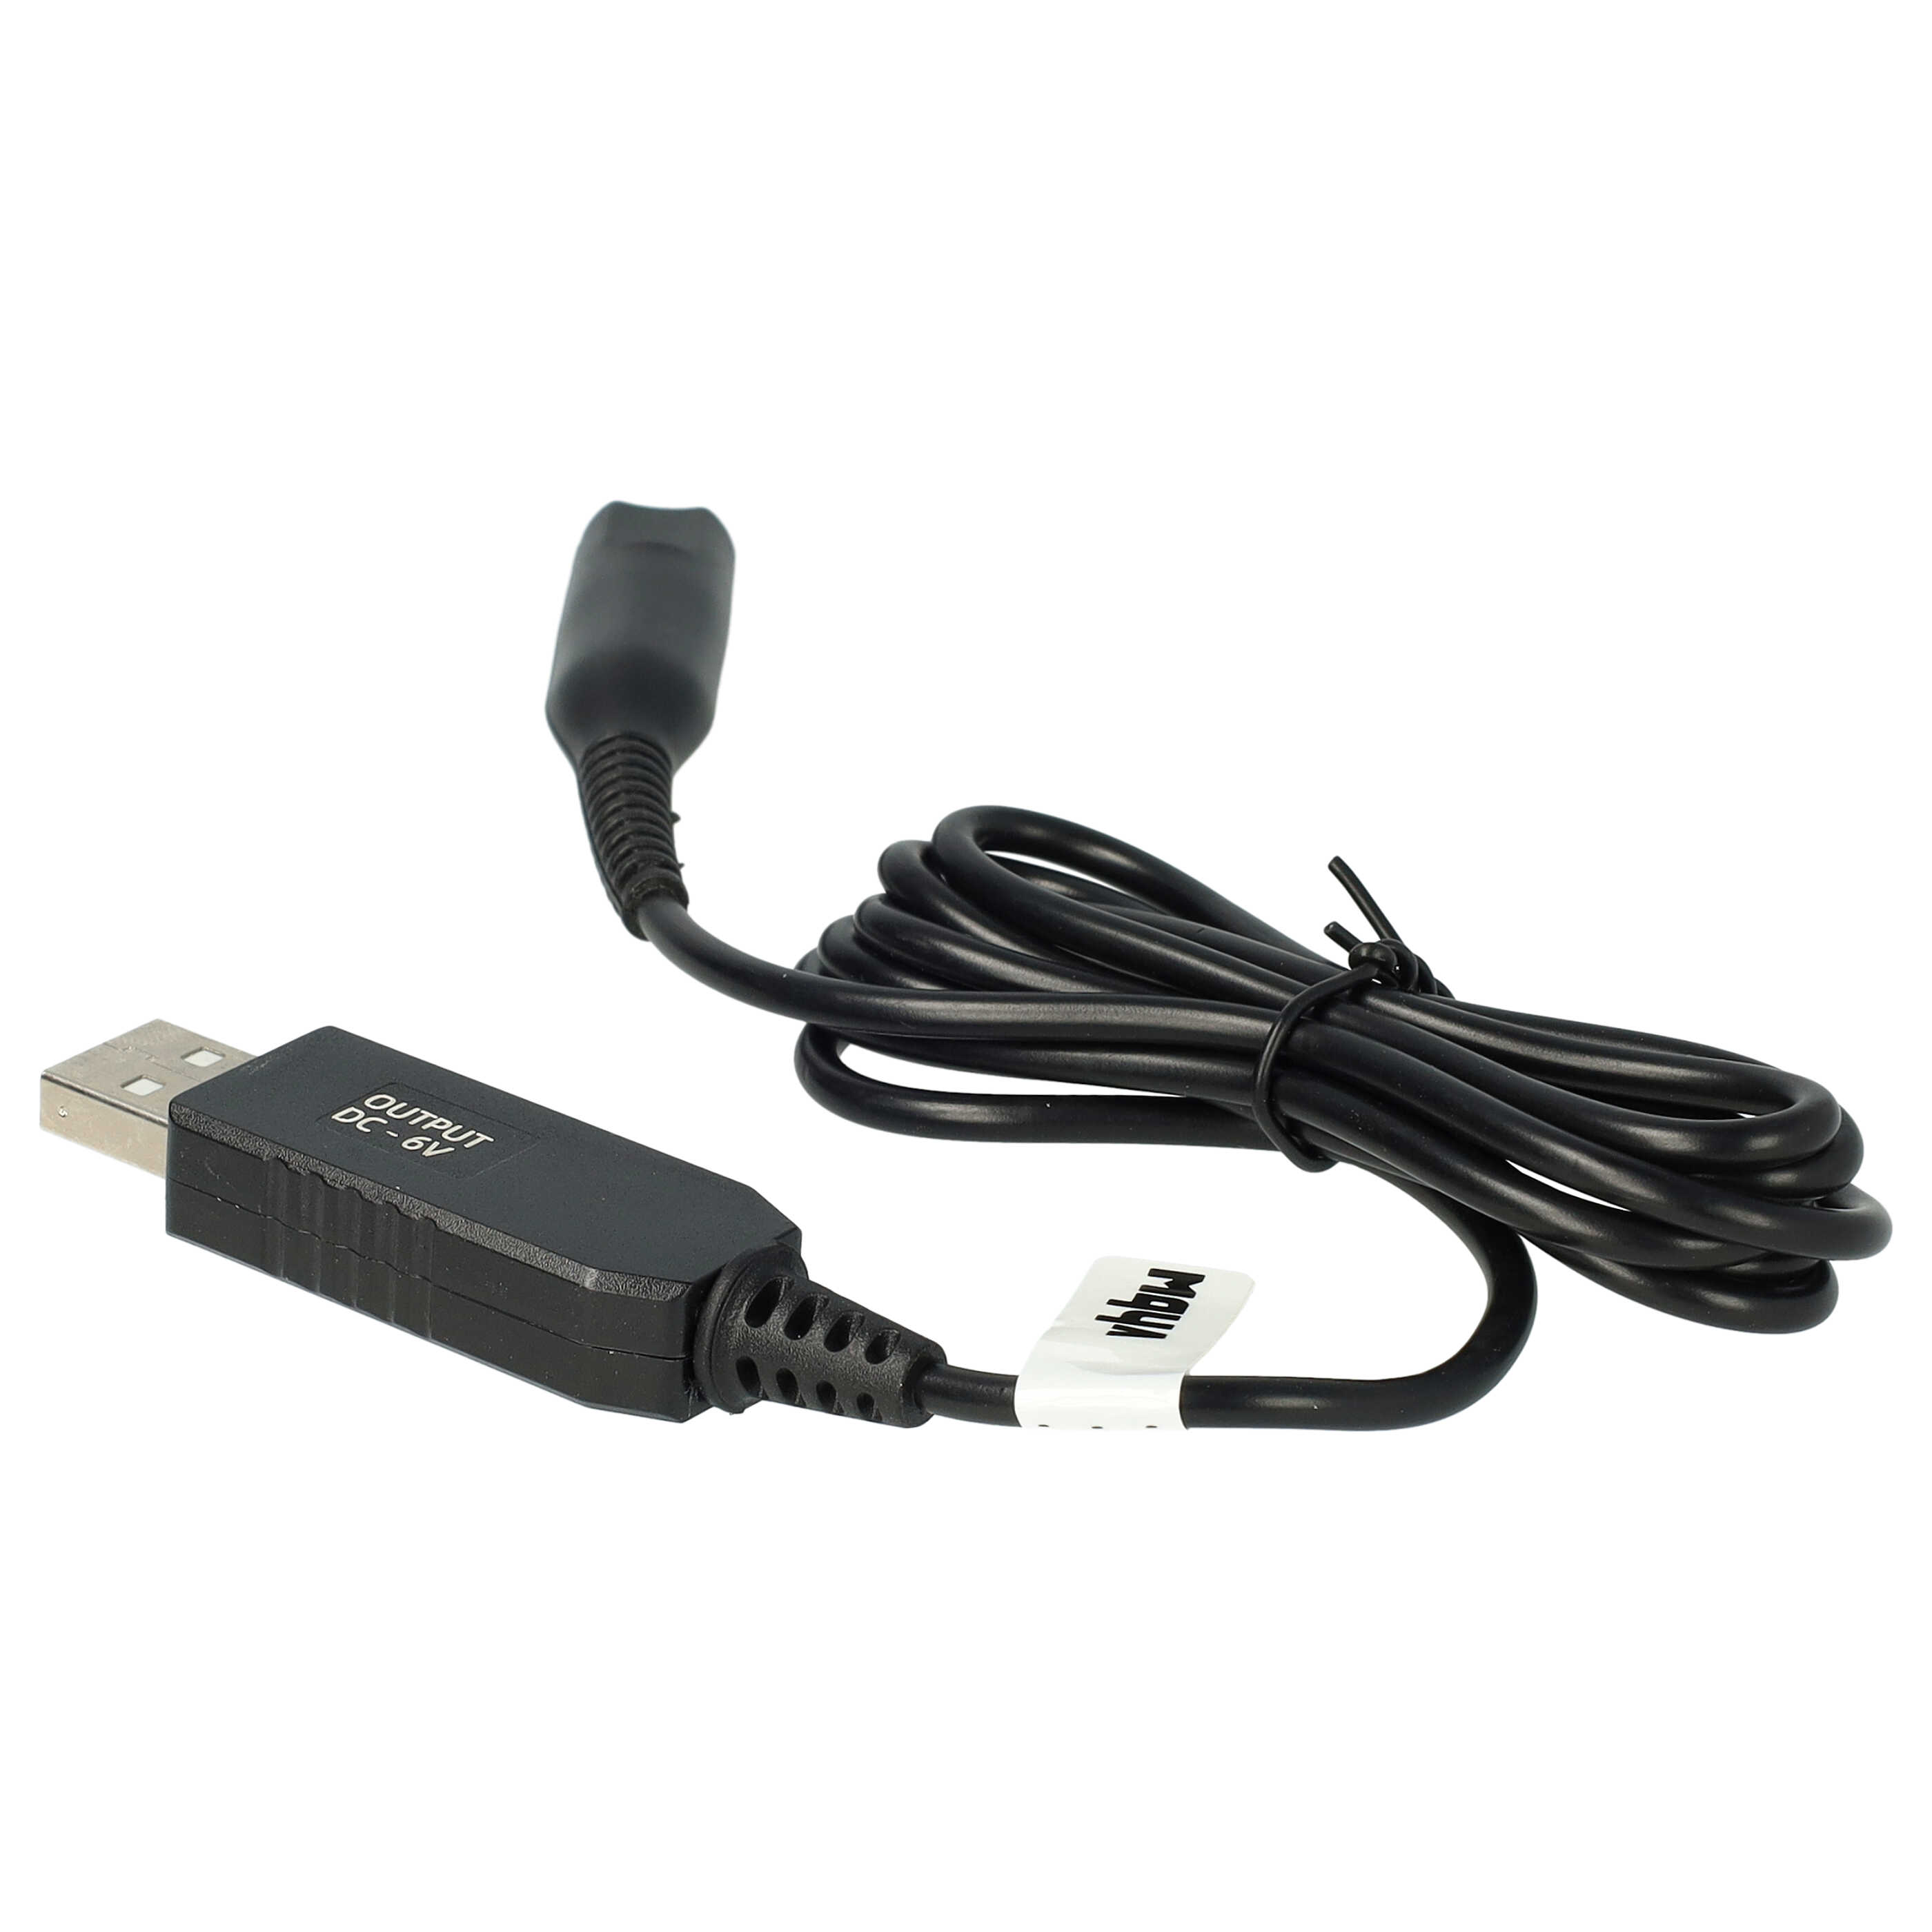 USB Ladekabel als Ersatz für Braun 491-5691, 81615618, 8161561, 81747675 für Braun Rasierer - 120 cm